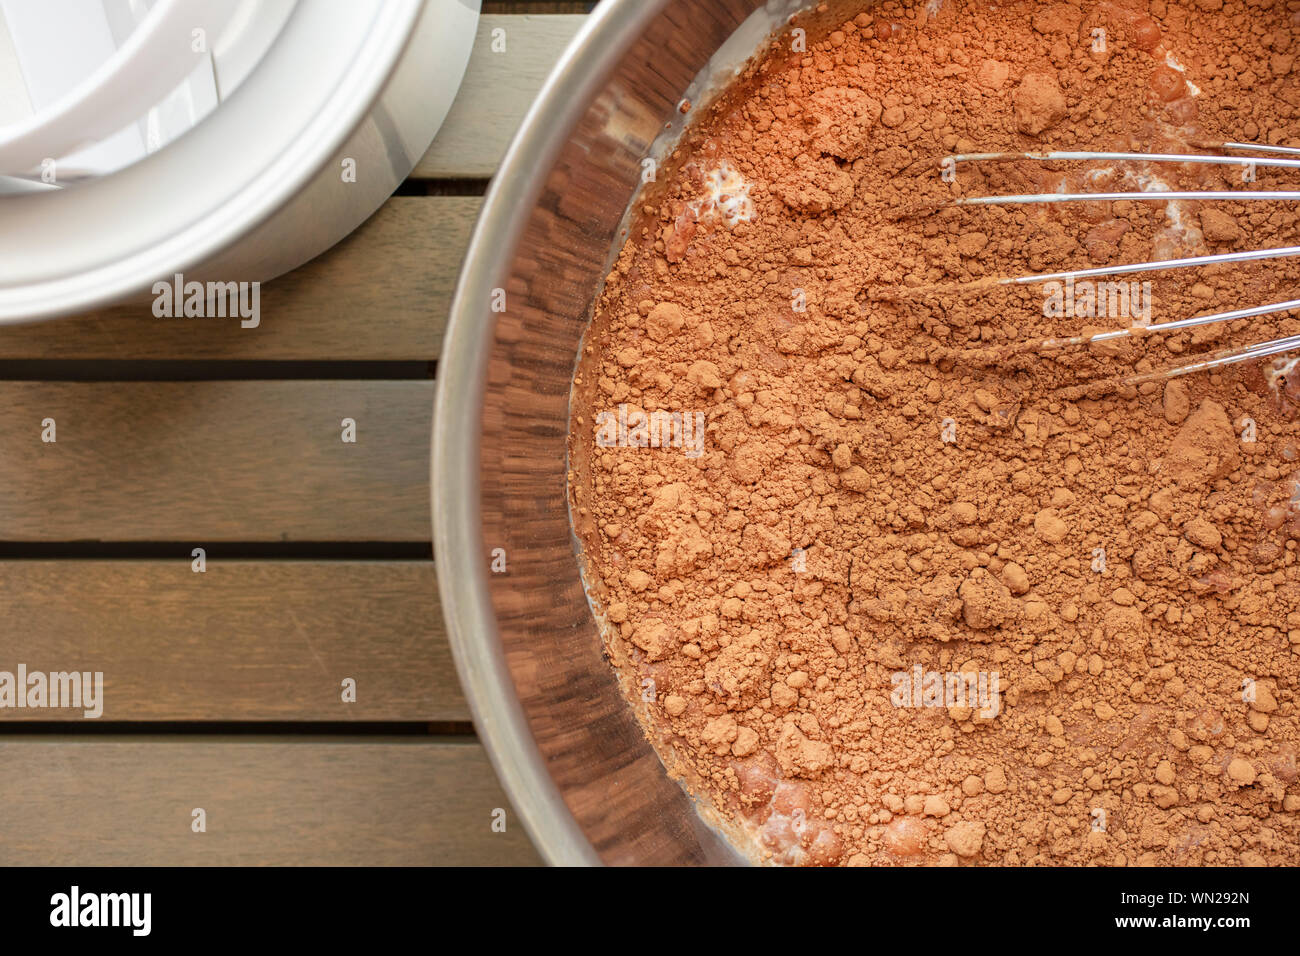 Schokolade Ibb Minsk creme Mischung in einer Küche Schüssel mit der Auswurftrommel und dem Eiscreme-automaten Stockfoto